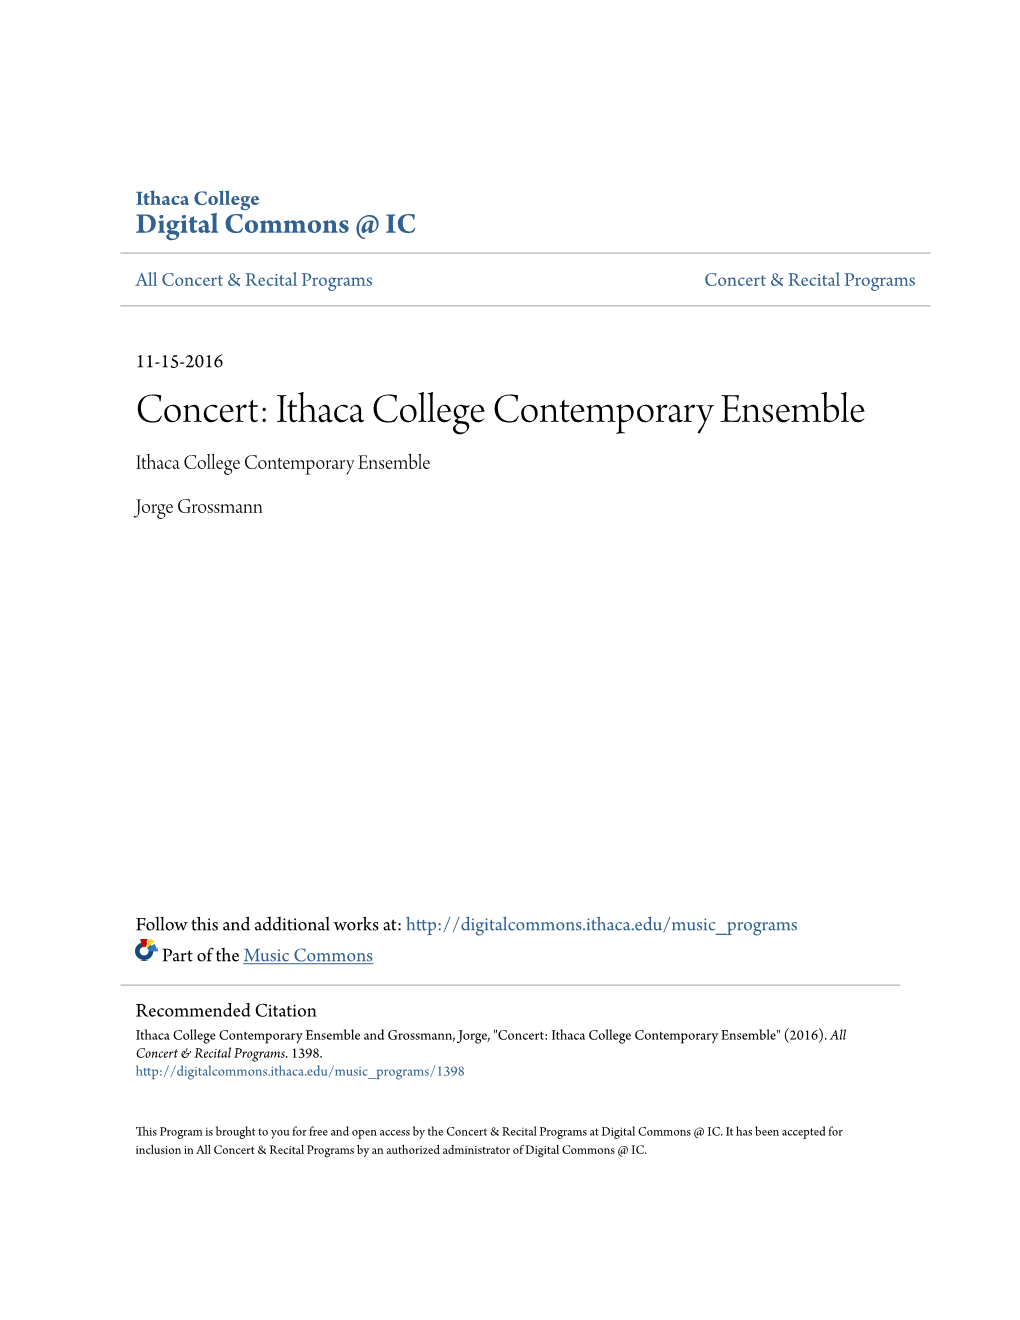 Concert: Ithaca College Contemporary Ensemble Ithaca College Contemporary Ensemble